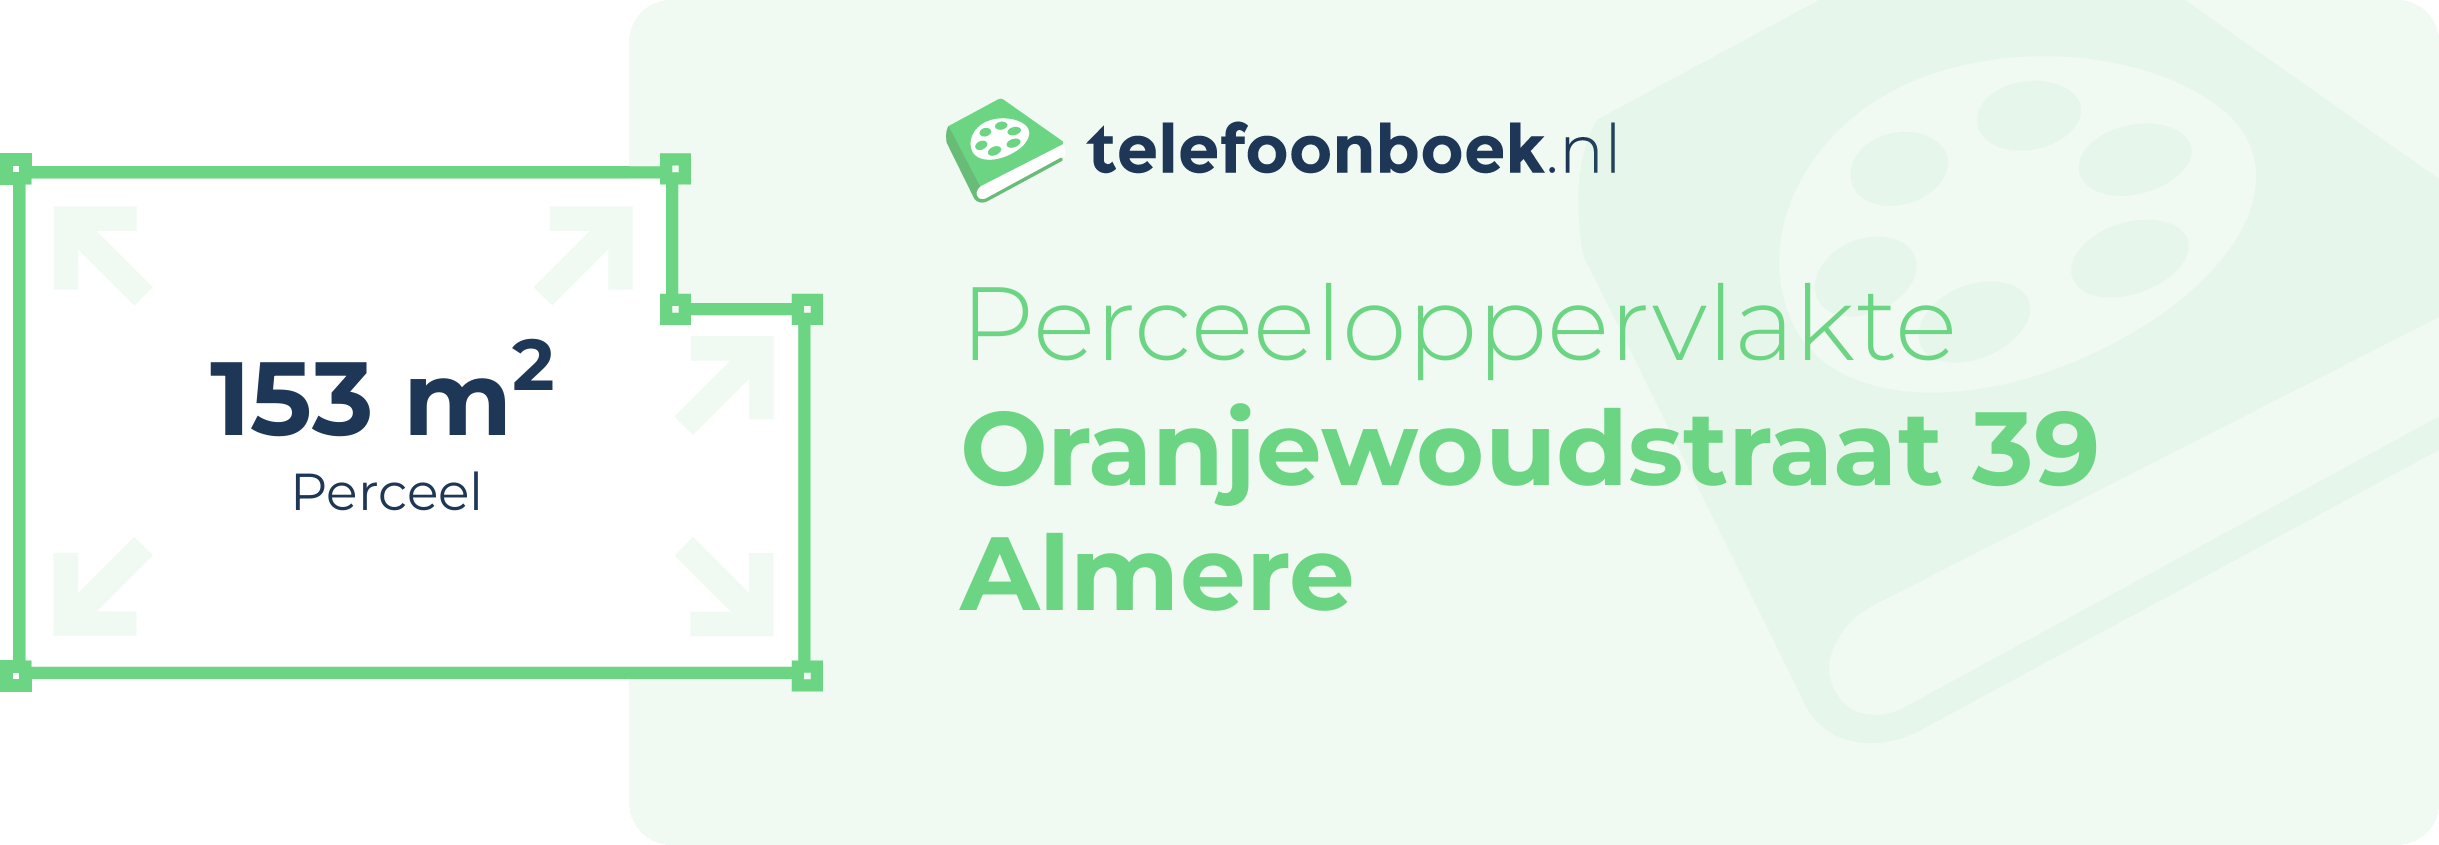 Perceeloppervlakte Oranjewoudstraat 39 Almere